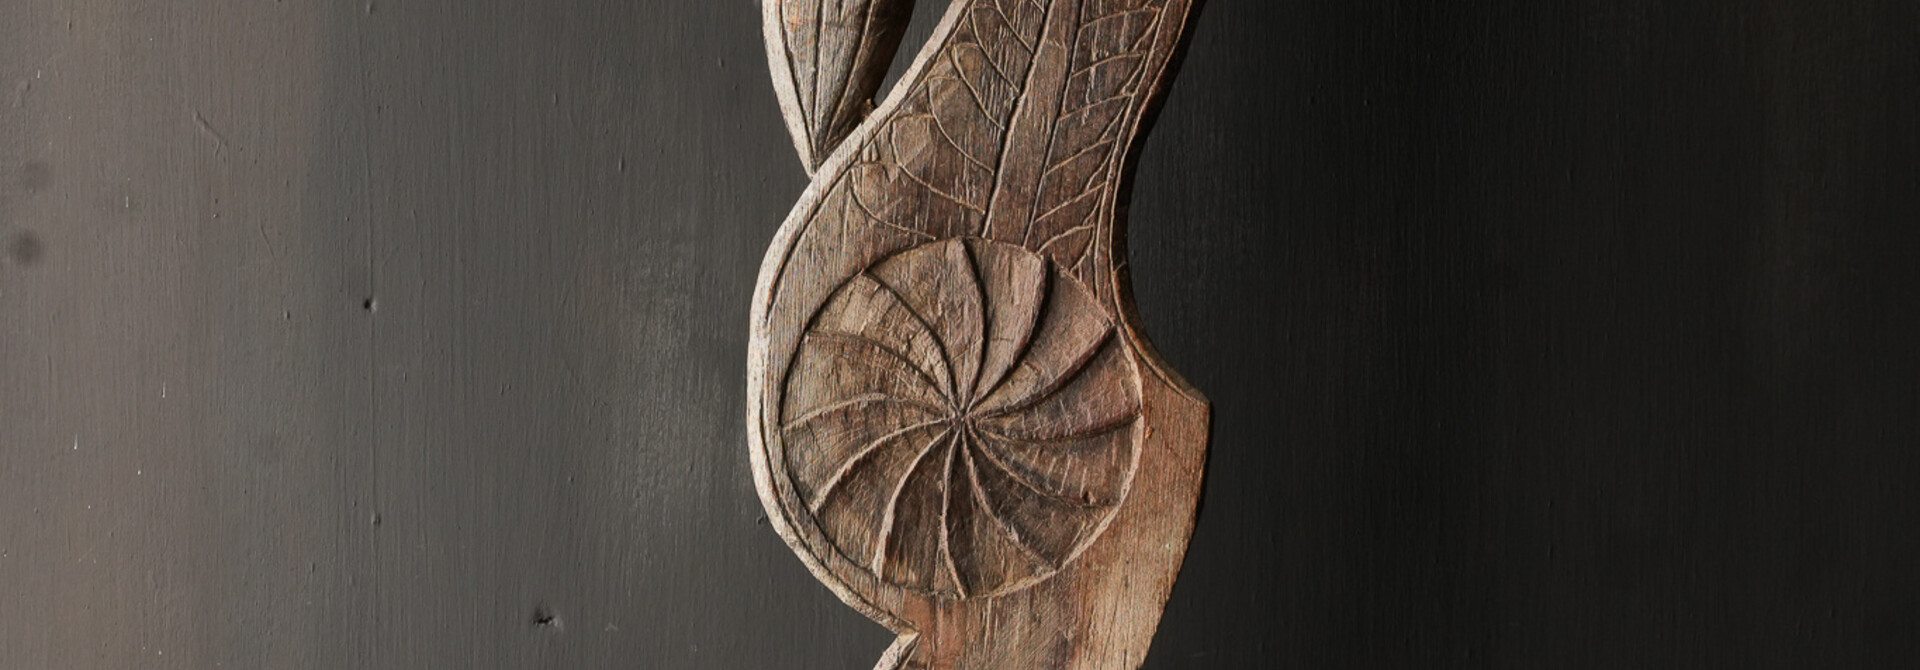 Wunderschönes, unvollkommenes Wabi-Sabi-Vogelornament aus altem Holz